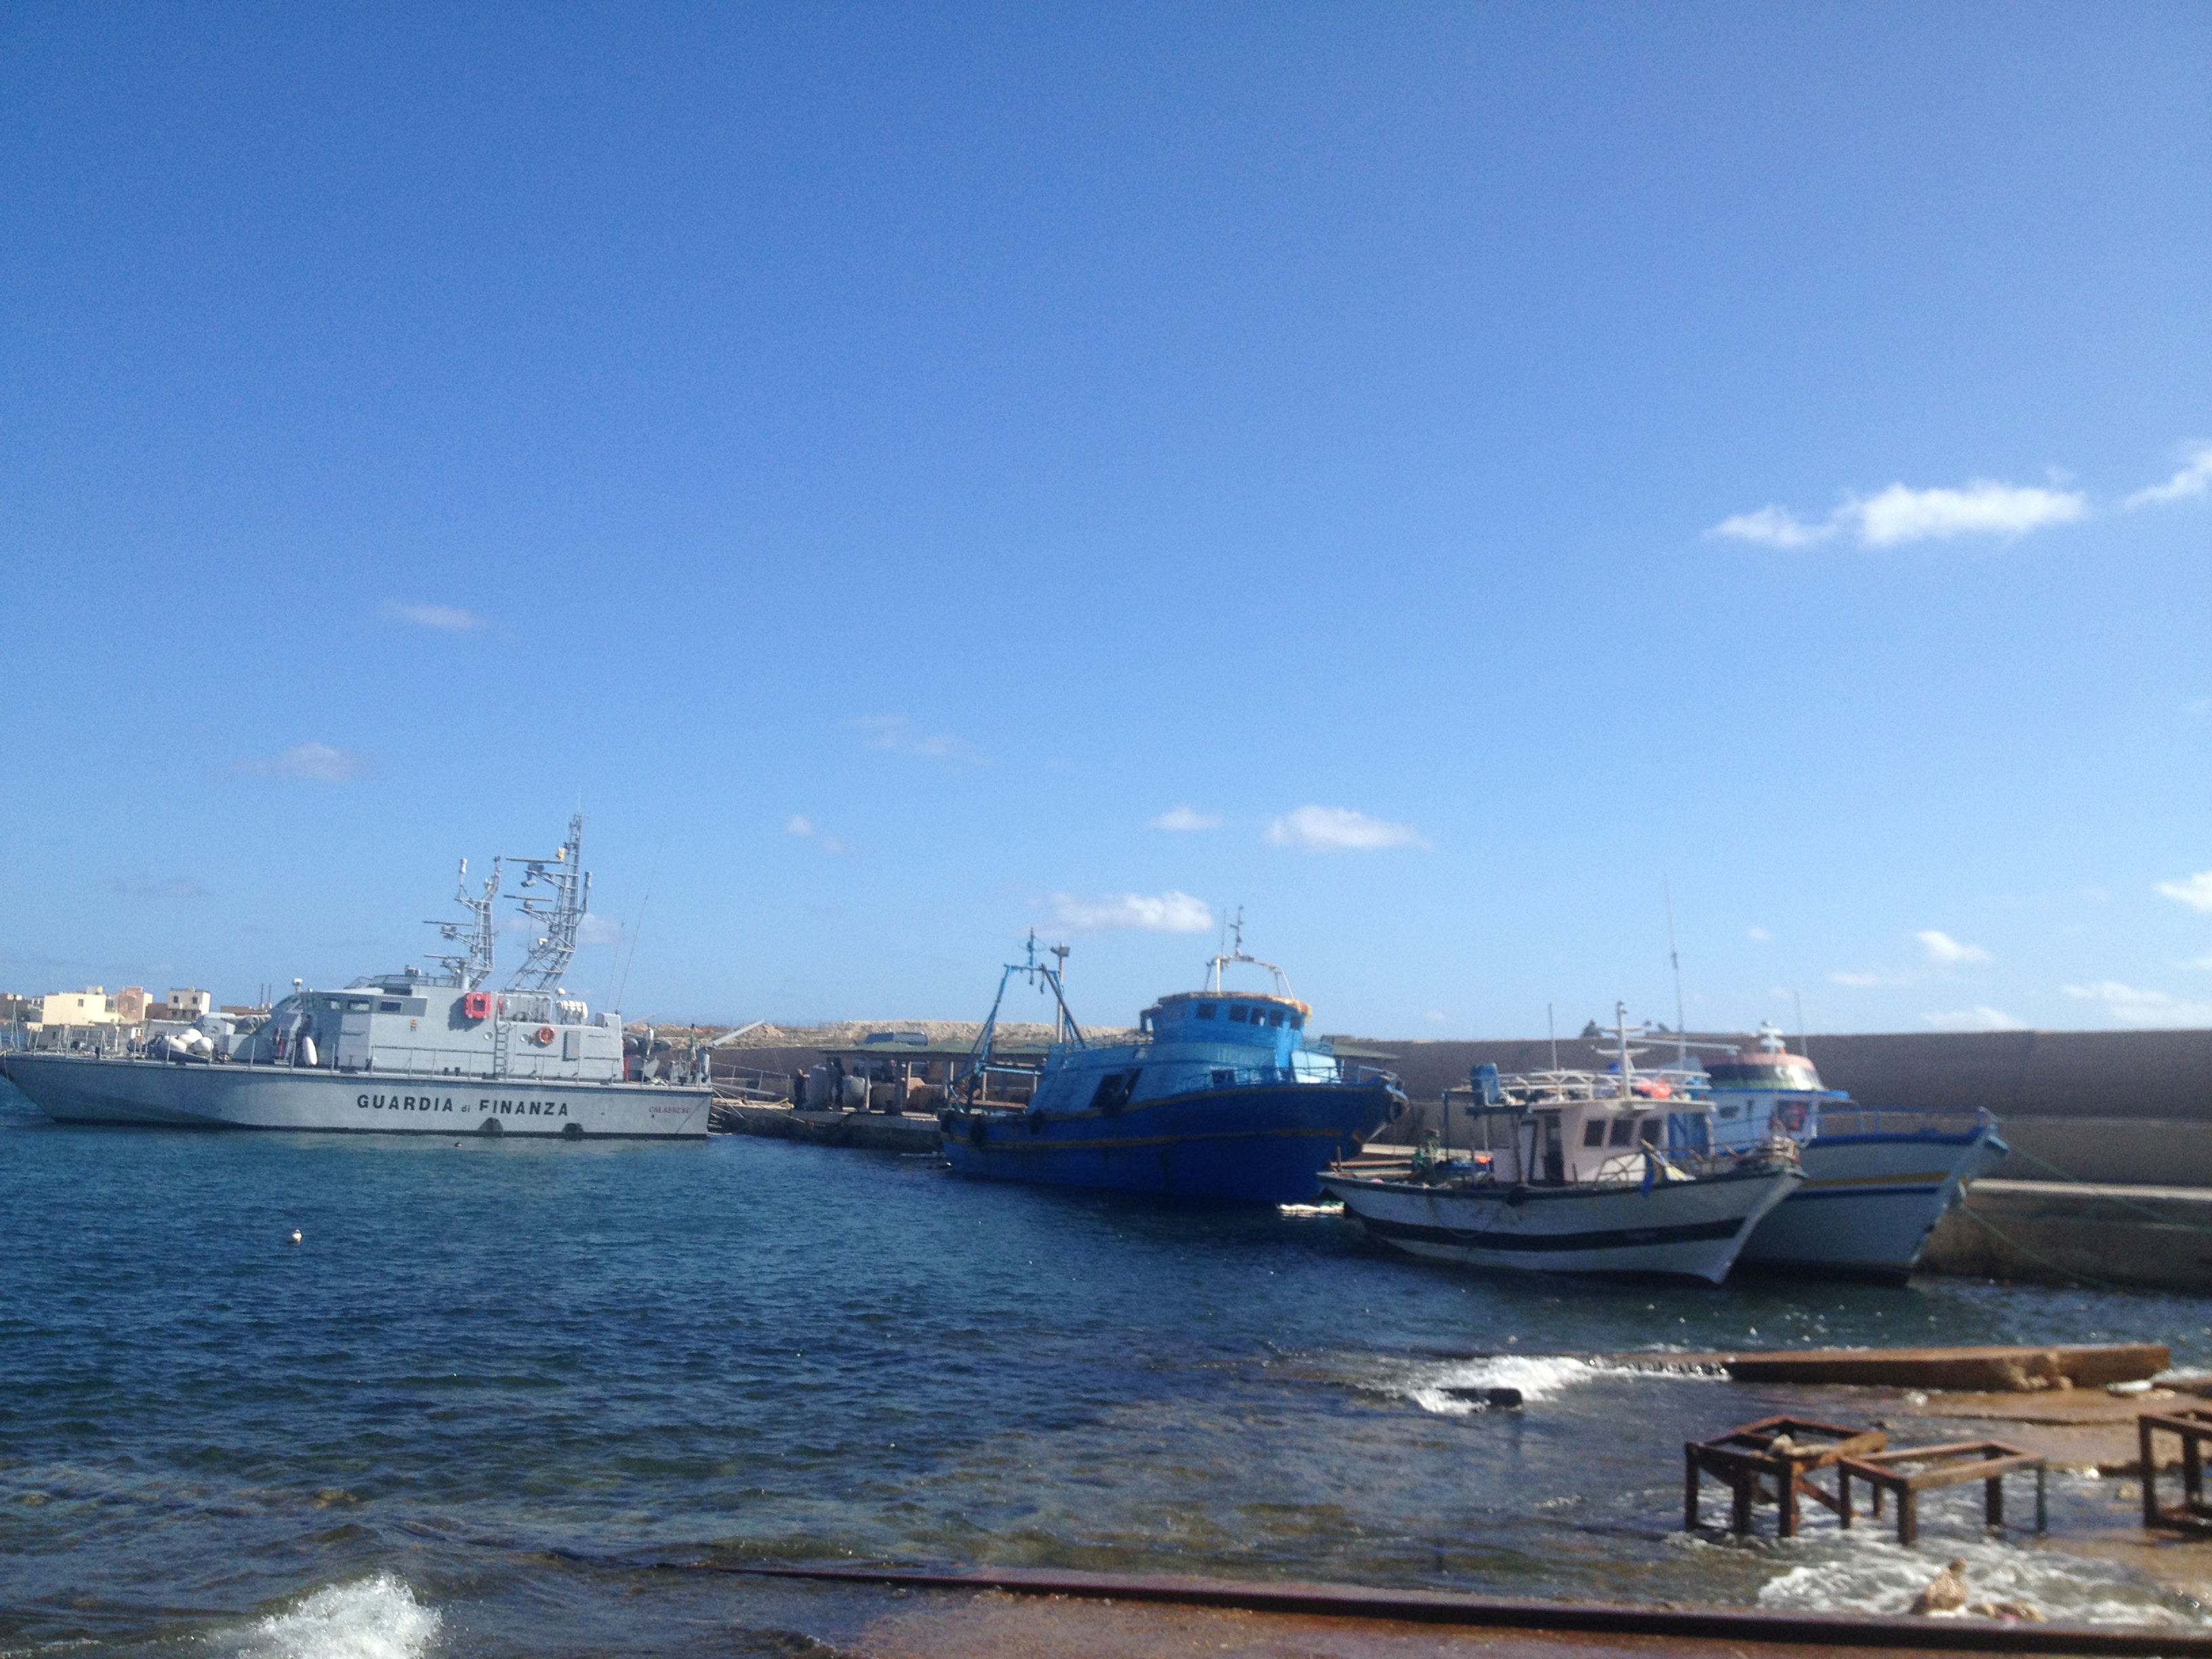 Le port de Lampedusa, le 20 octobre 2013. Trois barcasses de boat-people dans le port de Lampedusa à côté d'une des vedettes des Douanes. La petit barcasse blanche est arrivée de nuit au port sans être repérée, quatre jours après le naufrage du 3 octobre. Elle contenait 200 boat-people. Photo : François Dufour